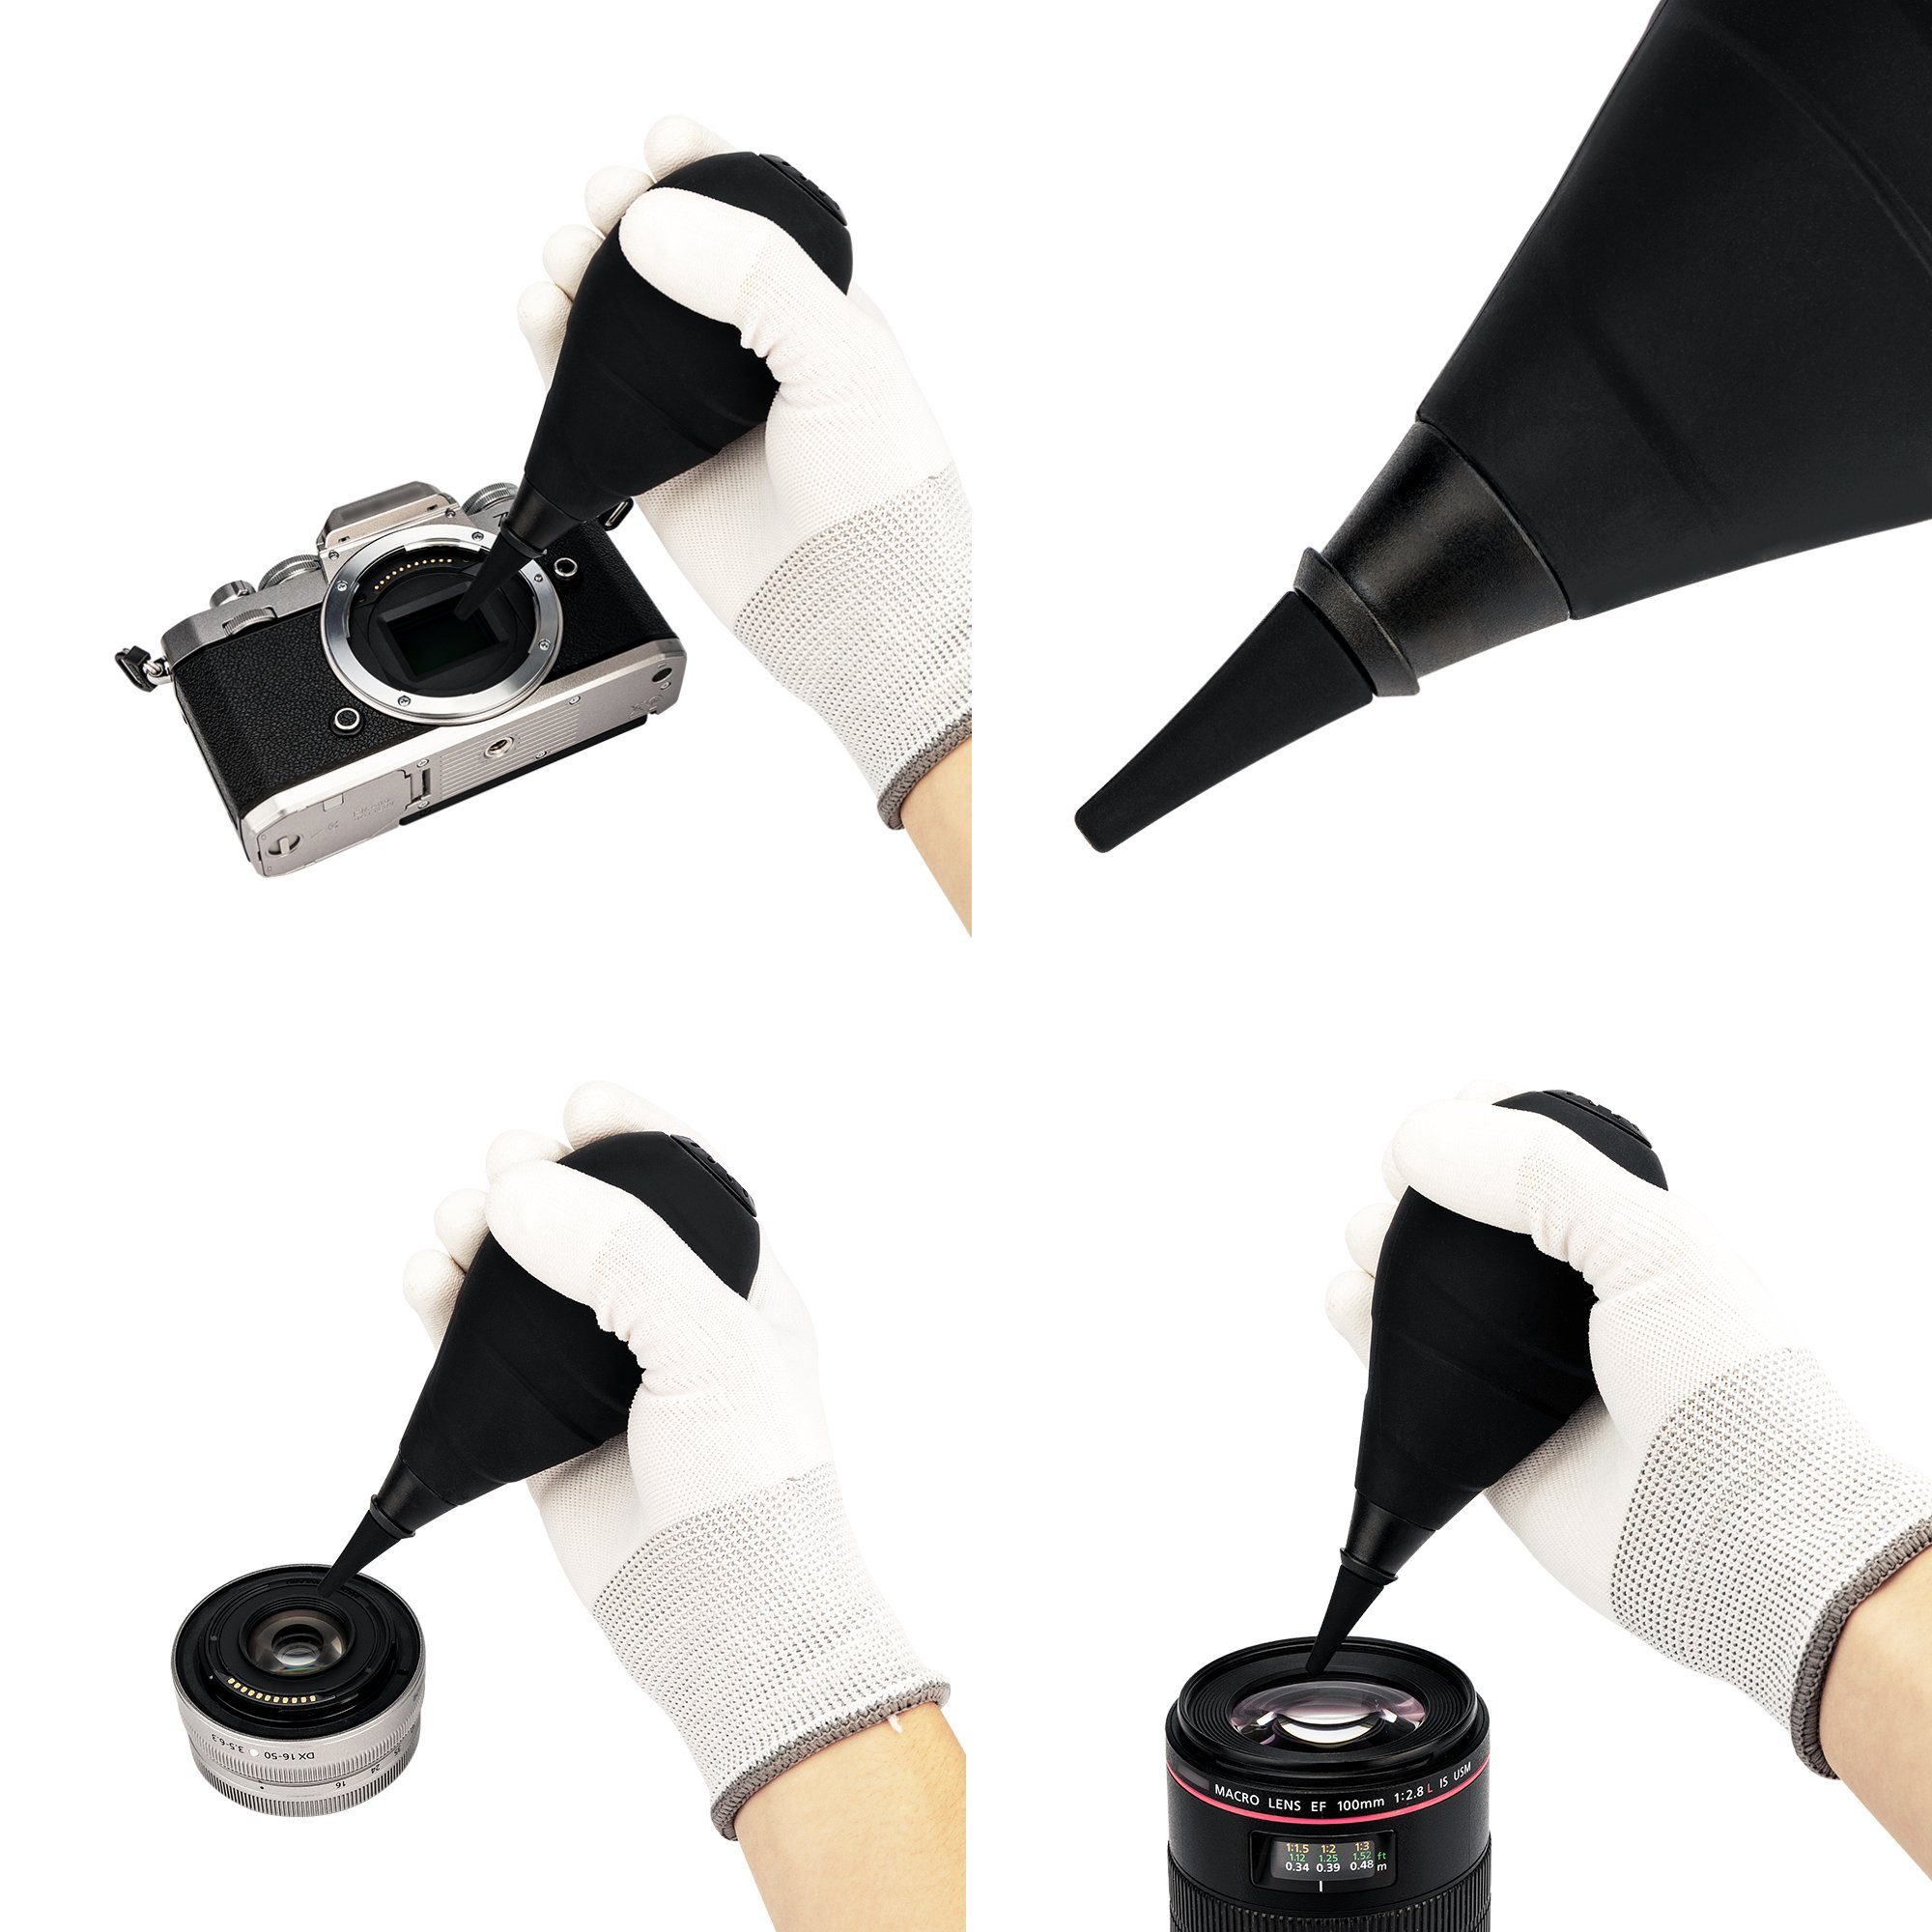 Dust-Free Air Blower Blasebalg Rakete Handschuhe Minadax Kamerazubehör-Set mit Minadax